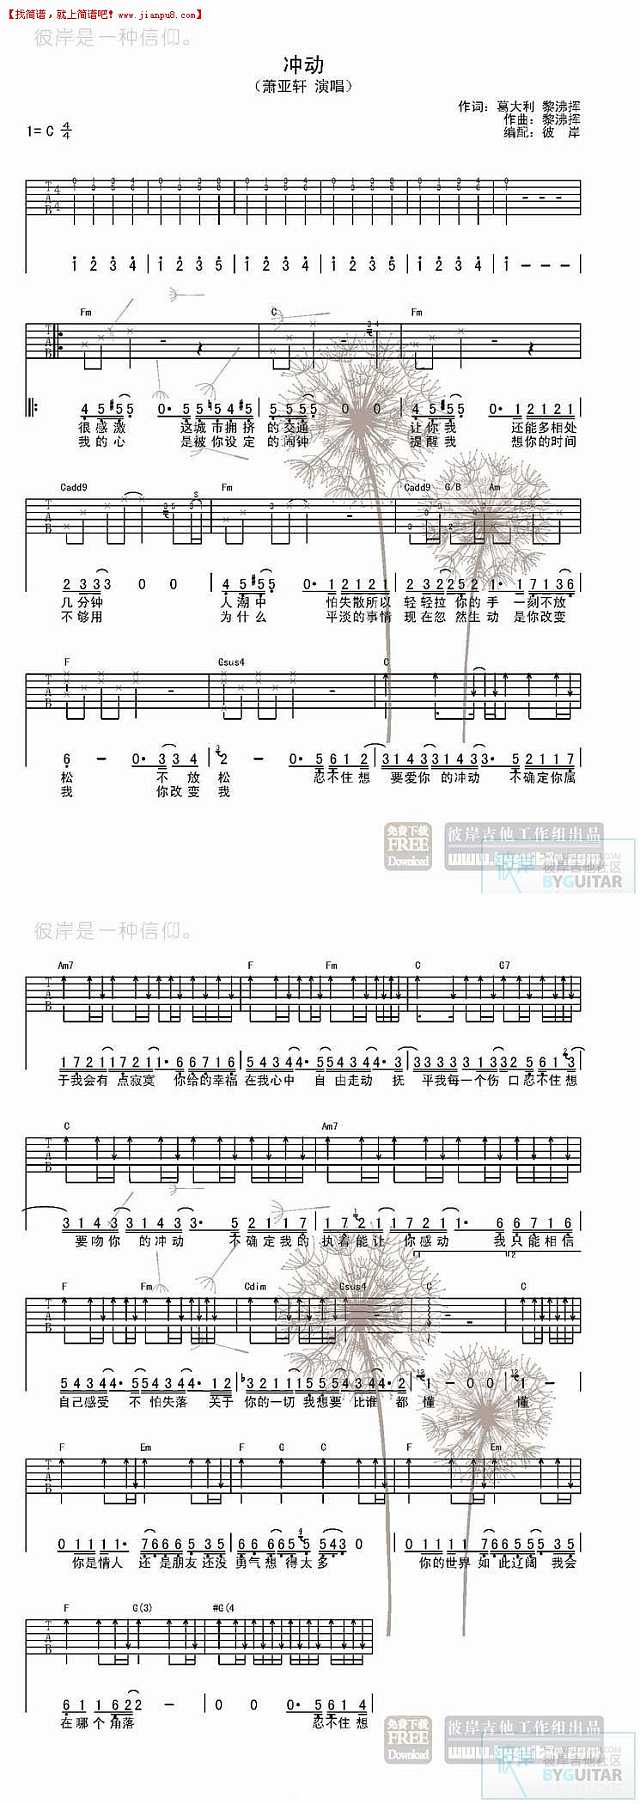 萧亚轩 冲动 吉他谱pic1 www.jianpu8.cn